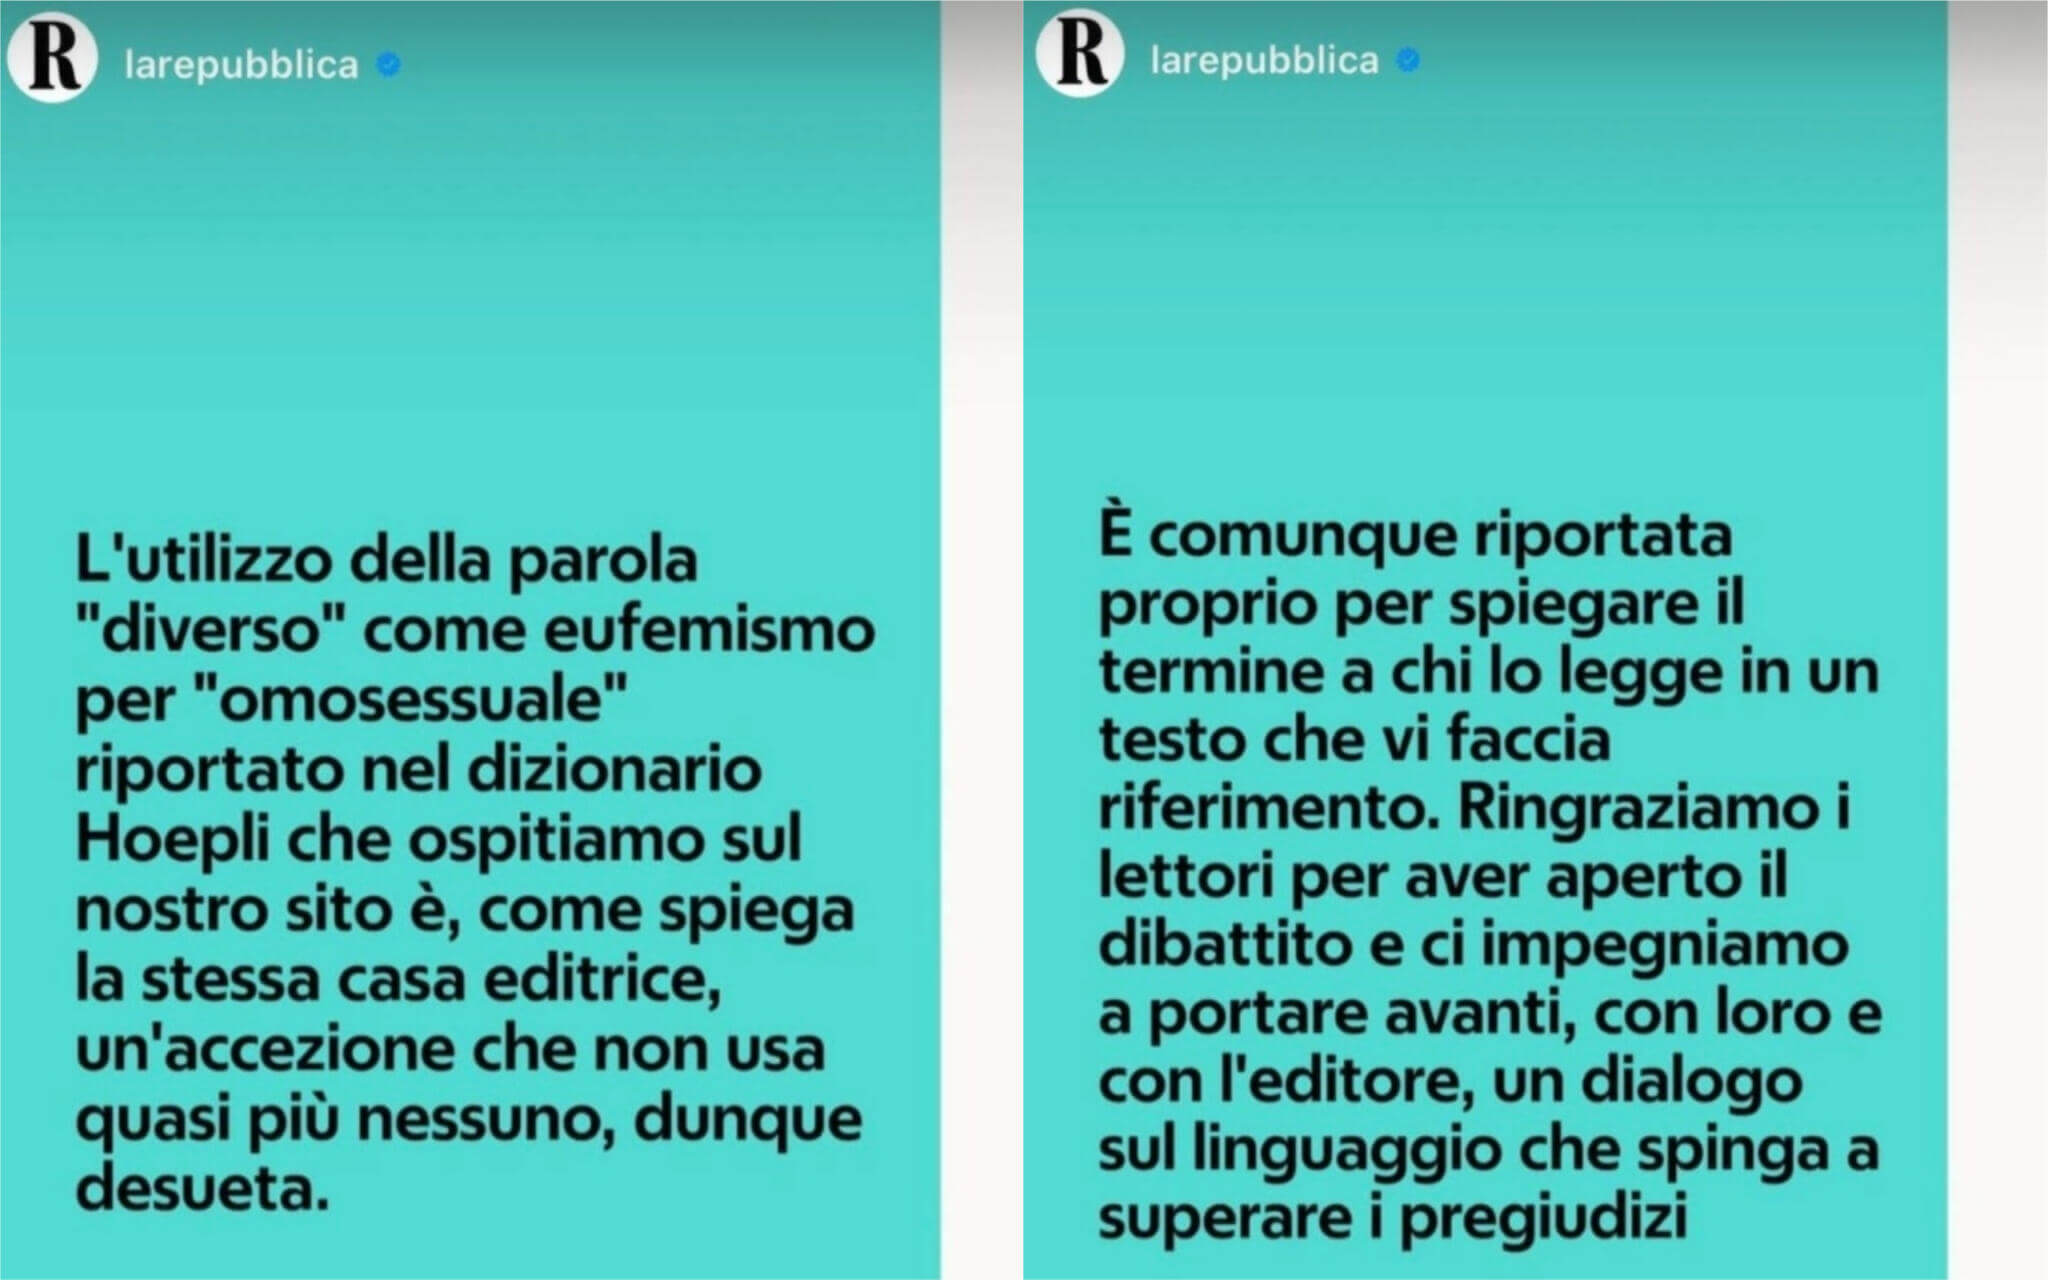 Gay e diverso sinonimi: bufera sul dizionario di Repubblica - Diverso sinonimo omosessuale La Repubblica 2048x1280 1 - Gay.it